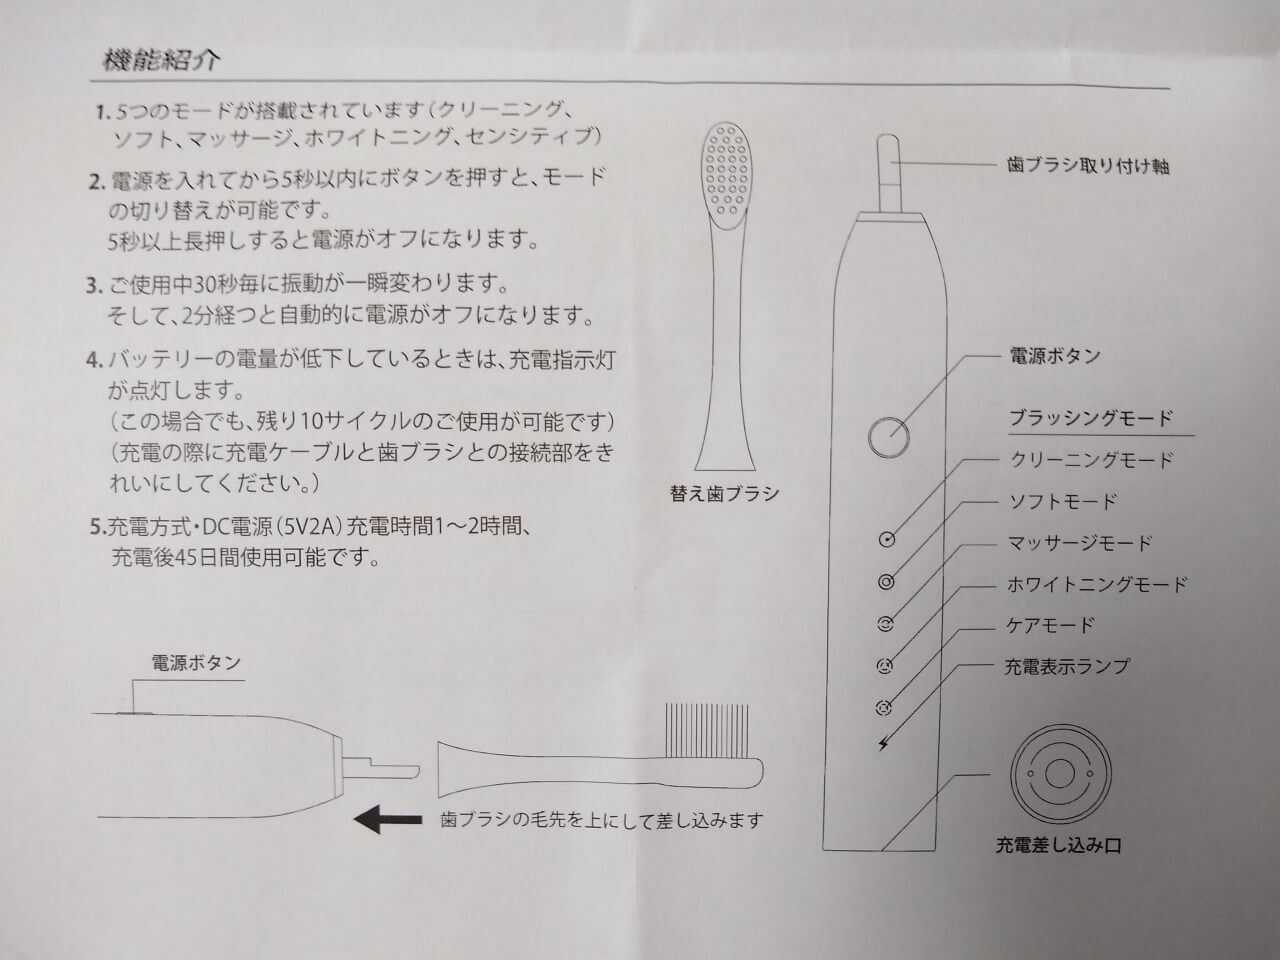 電動歯ブラシの説明書